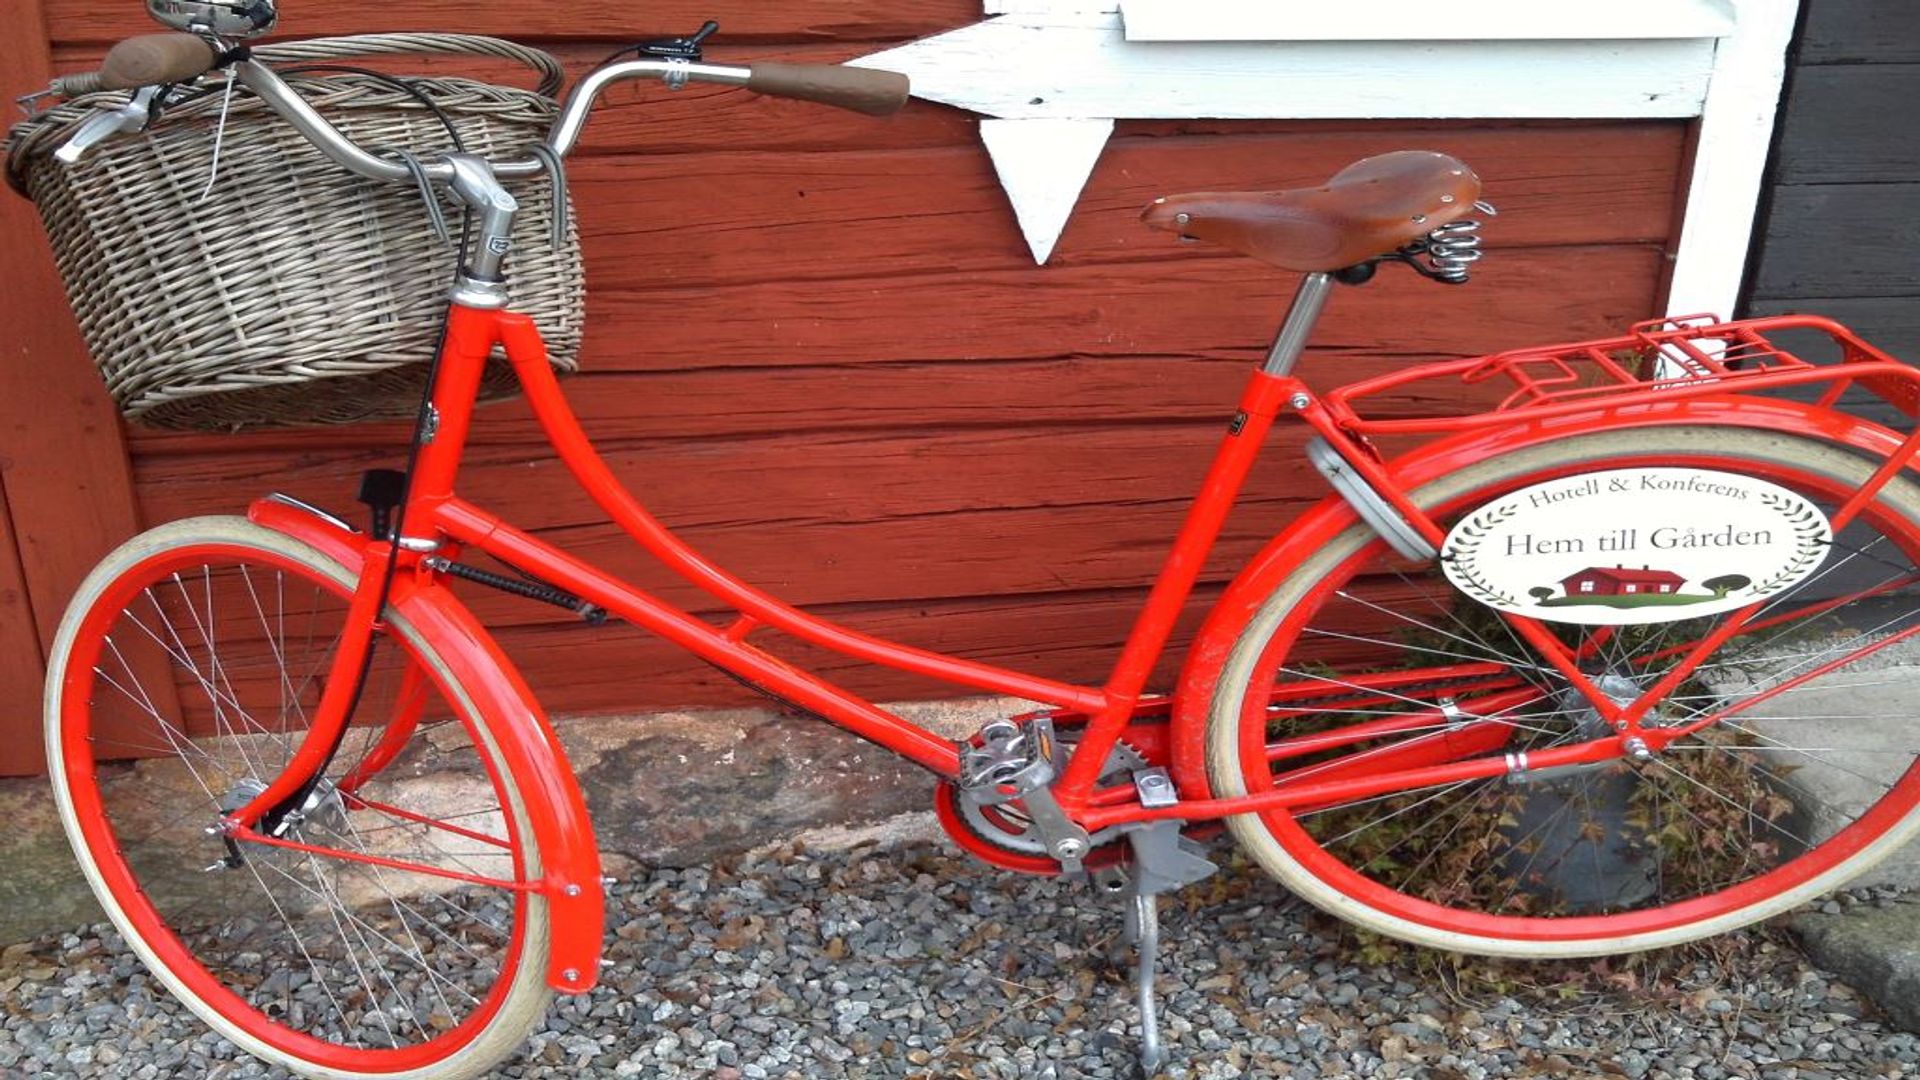 Cykel på hem till gården. Fotograf: Pressbild